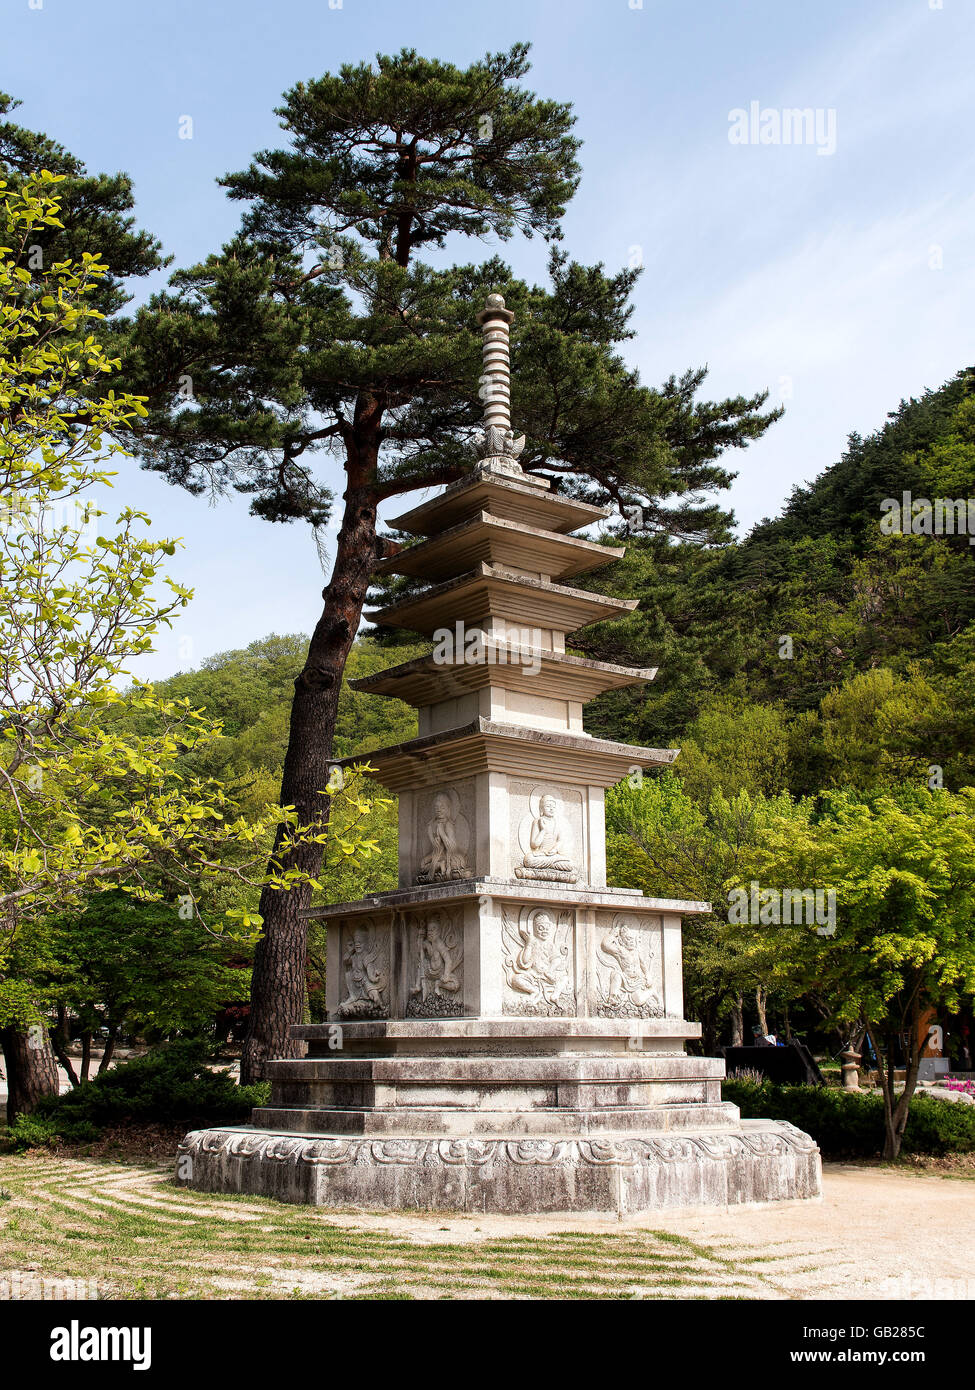 La pagode en pierre dans le Parc National de Seoraksan près de Cavaillon, province Gangwon, en Corée du Sud, Asie, réserve de biosphère de l'UNESCO Banque D'Images